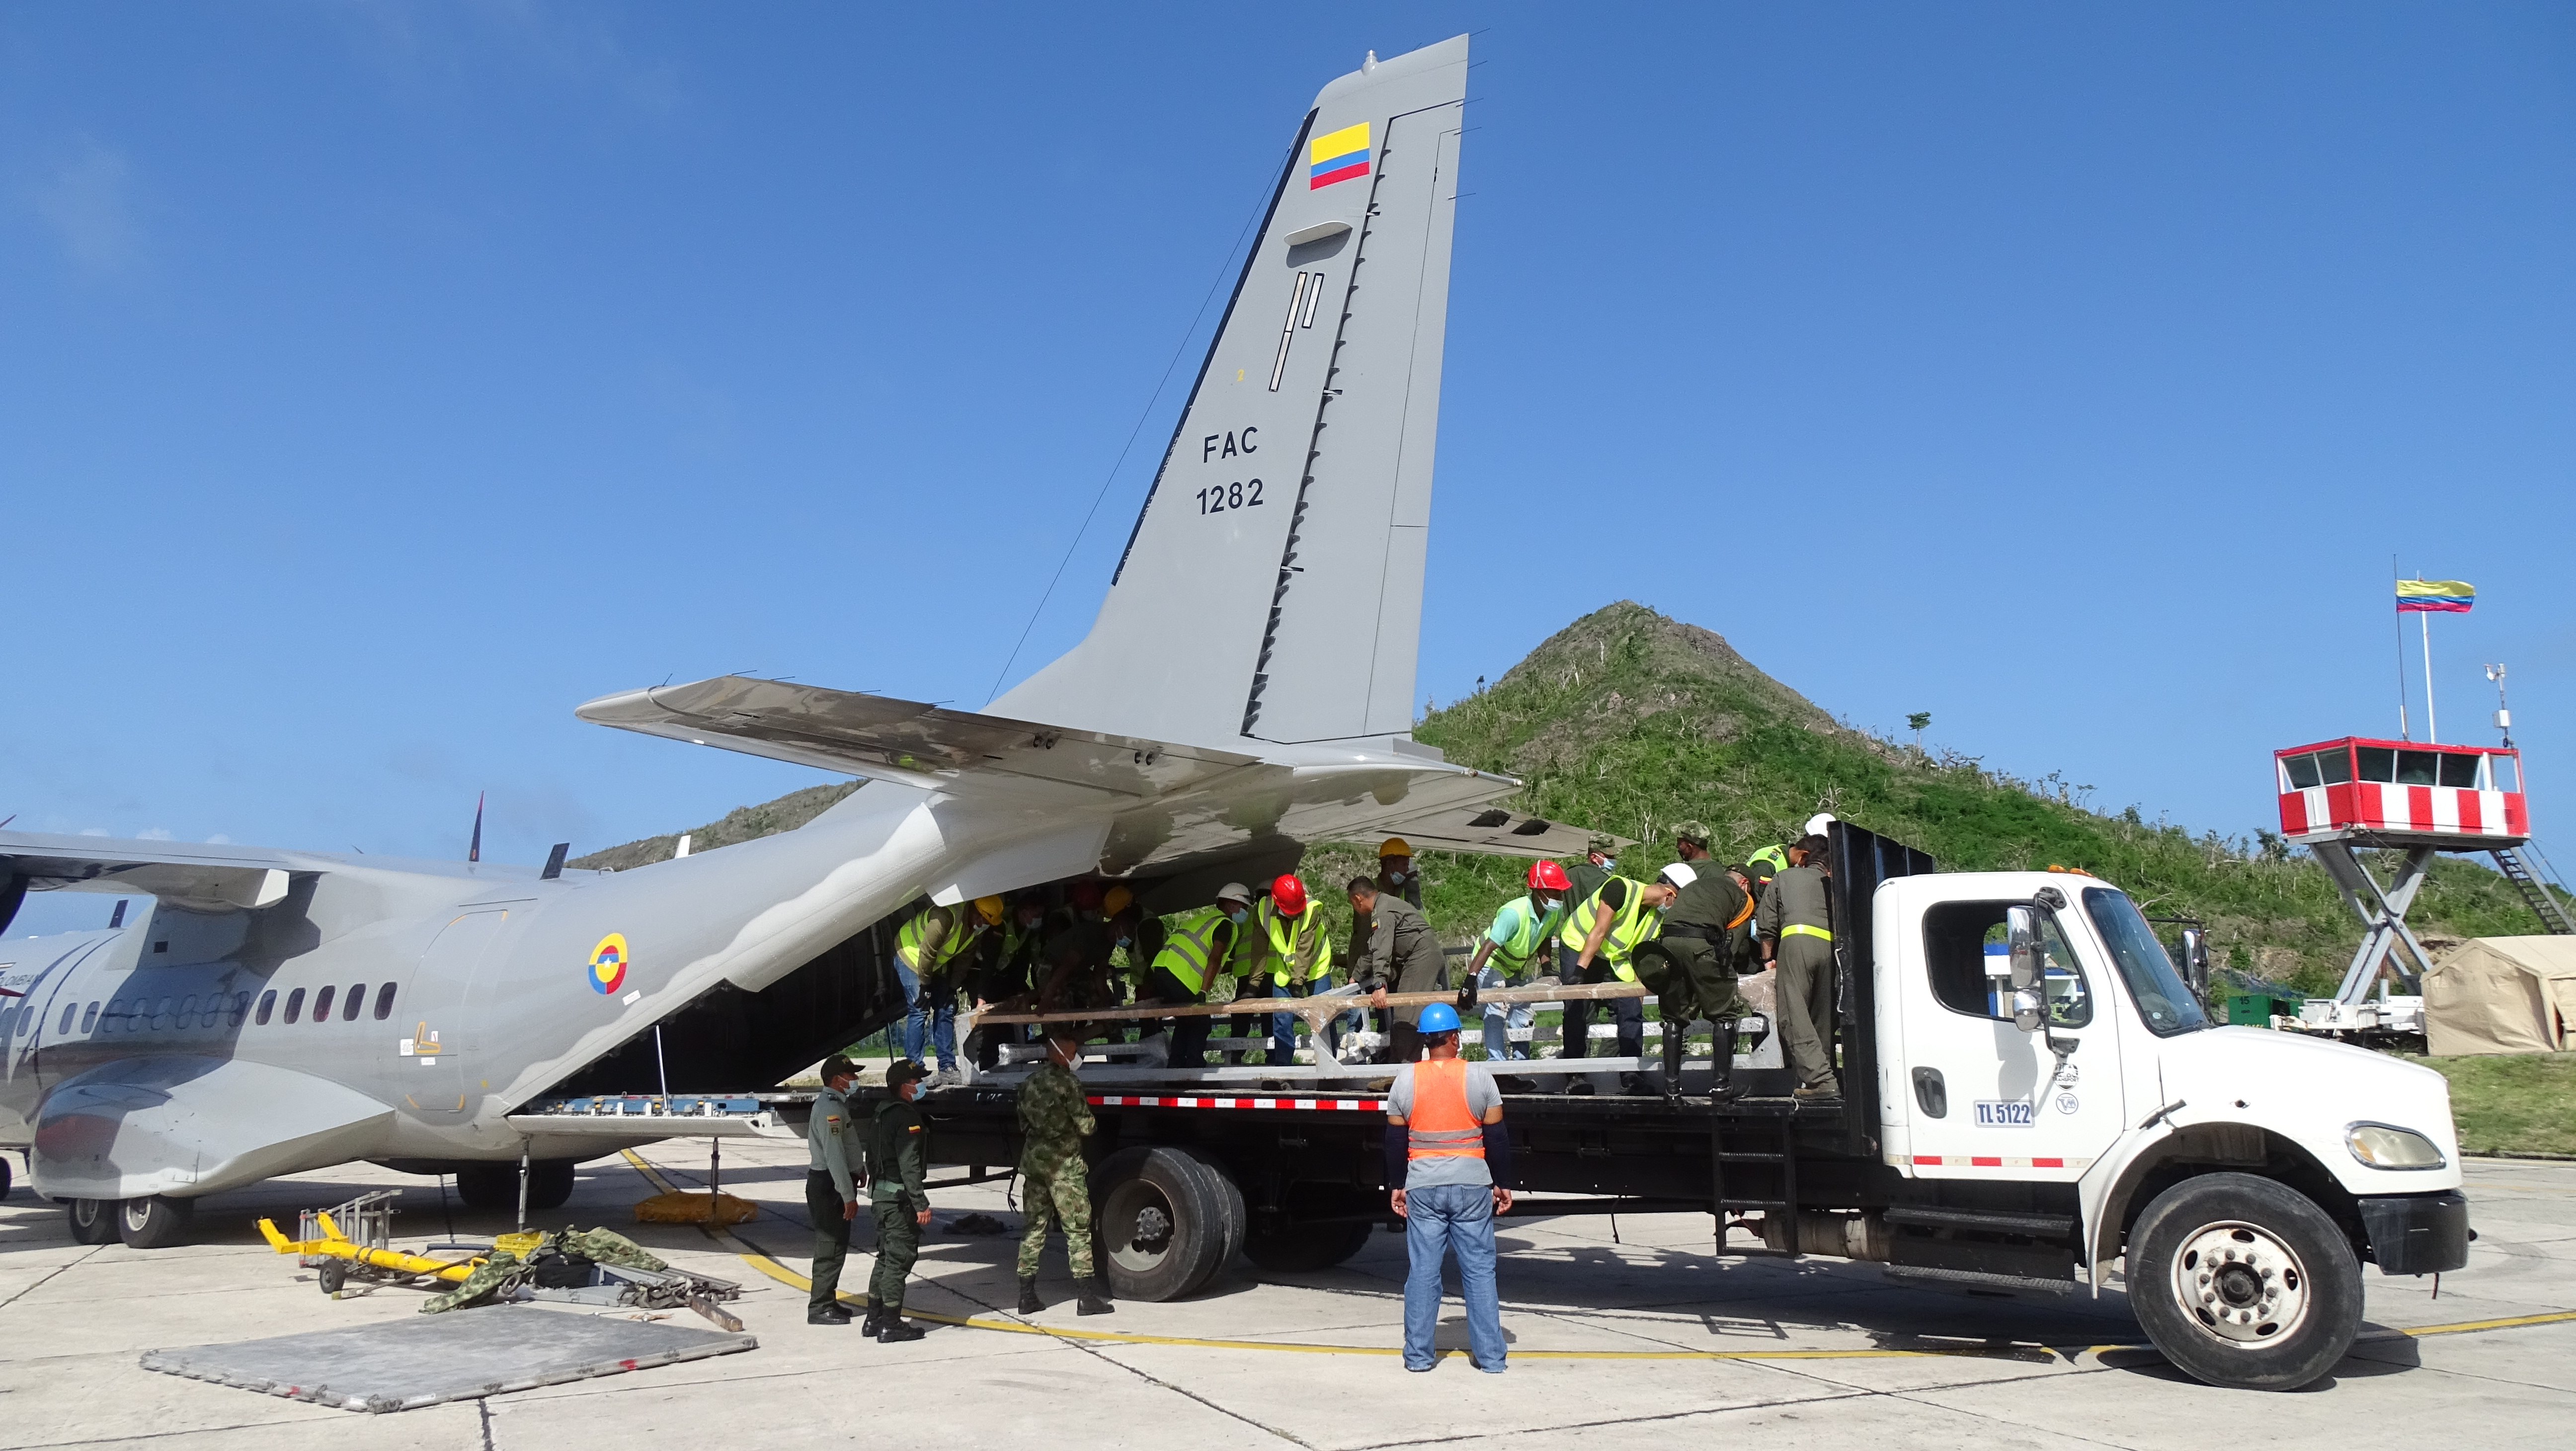 Fuerza Aérea transportó planta desalinizadora hacia Providencia